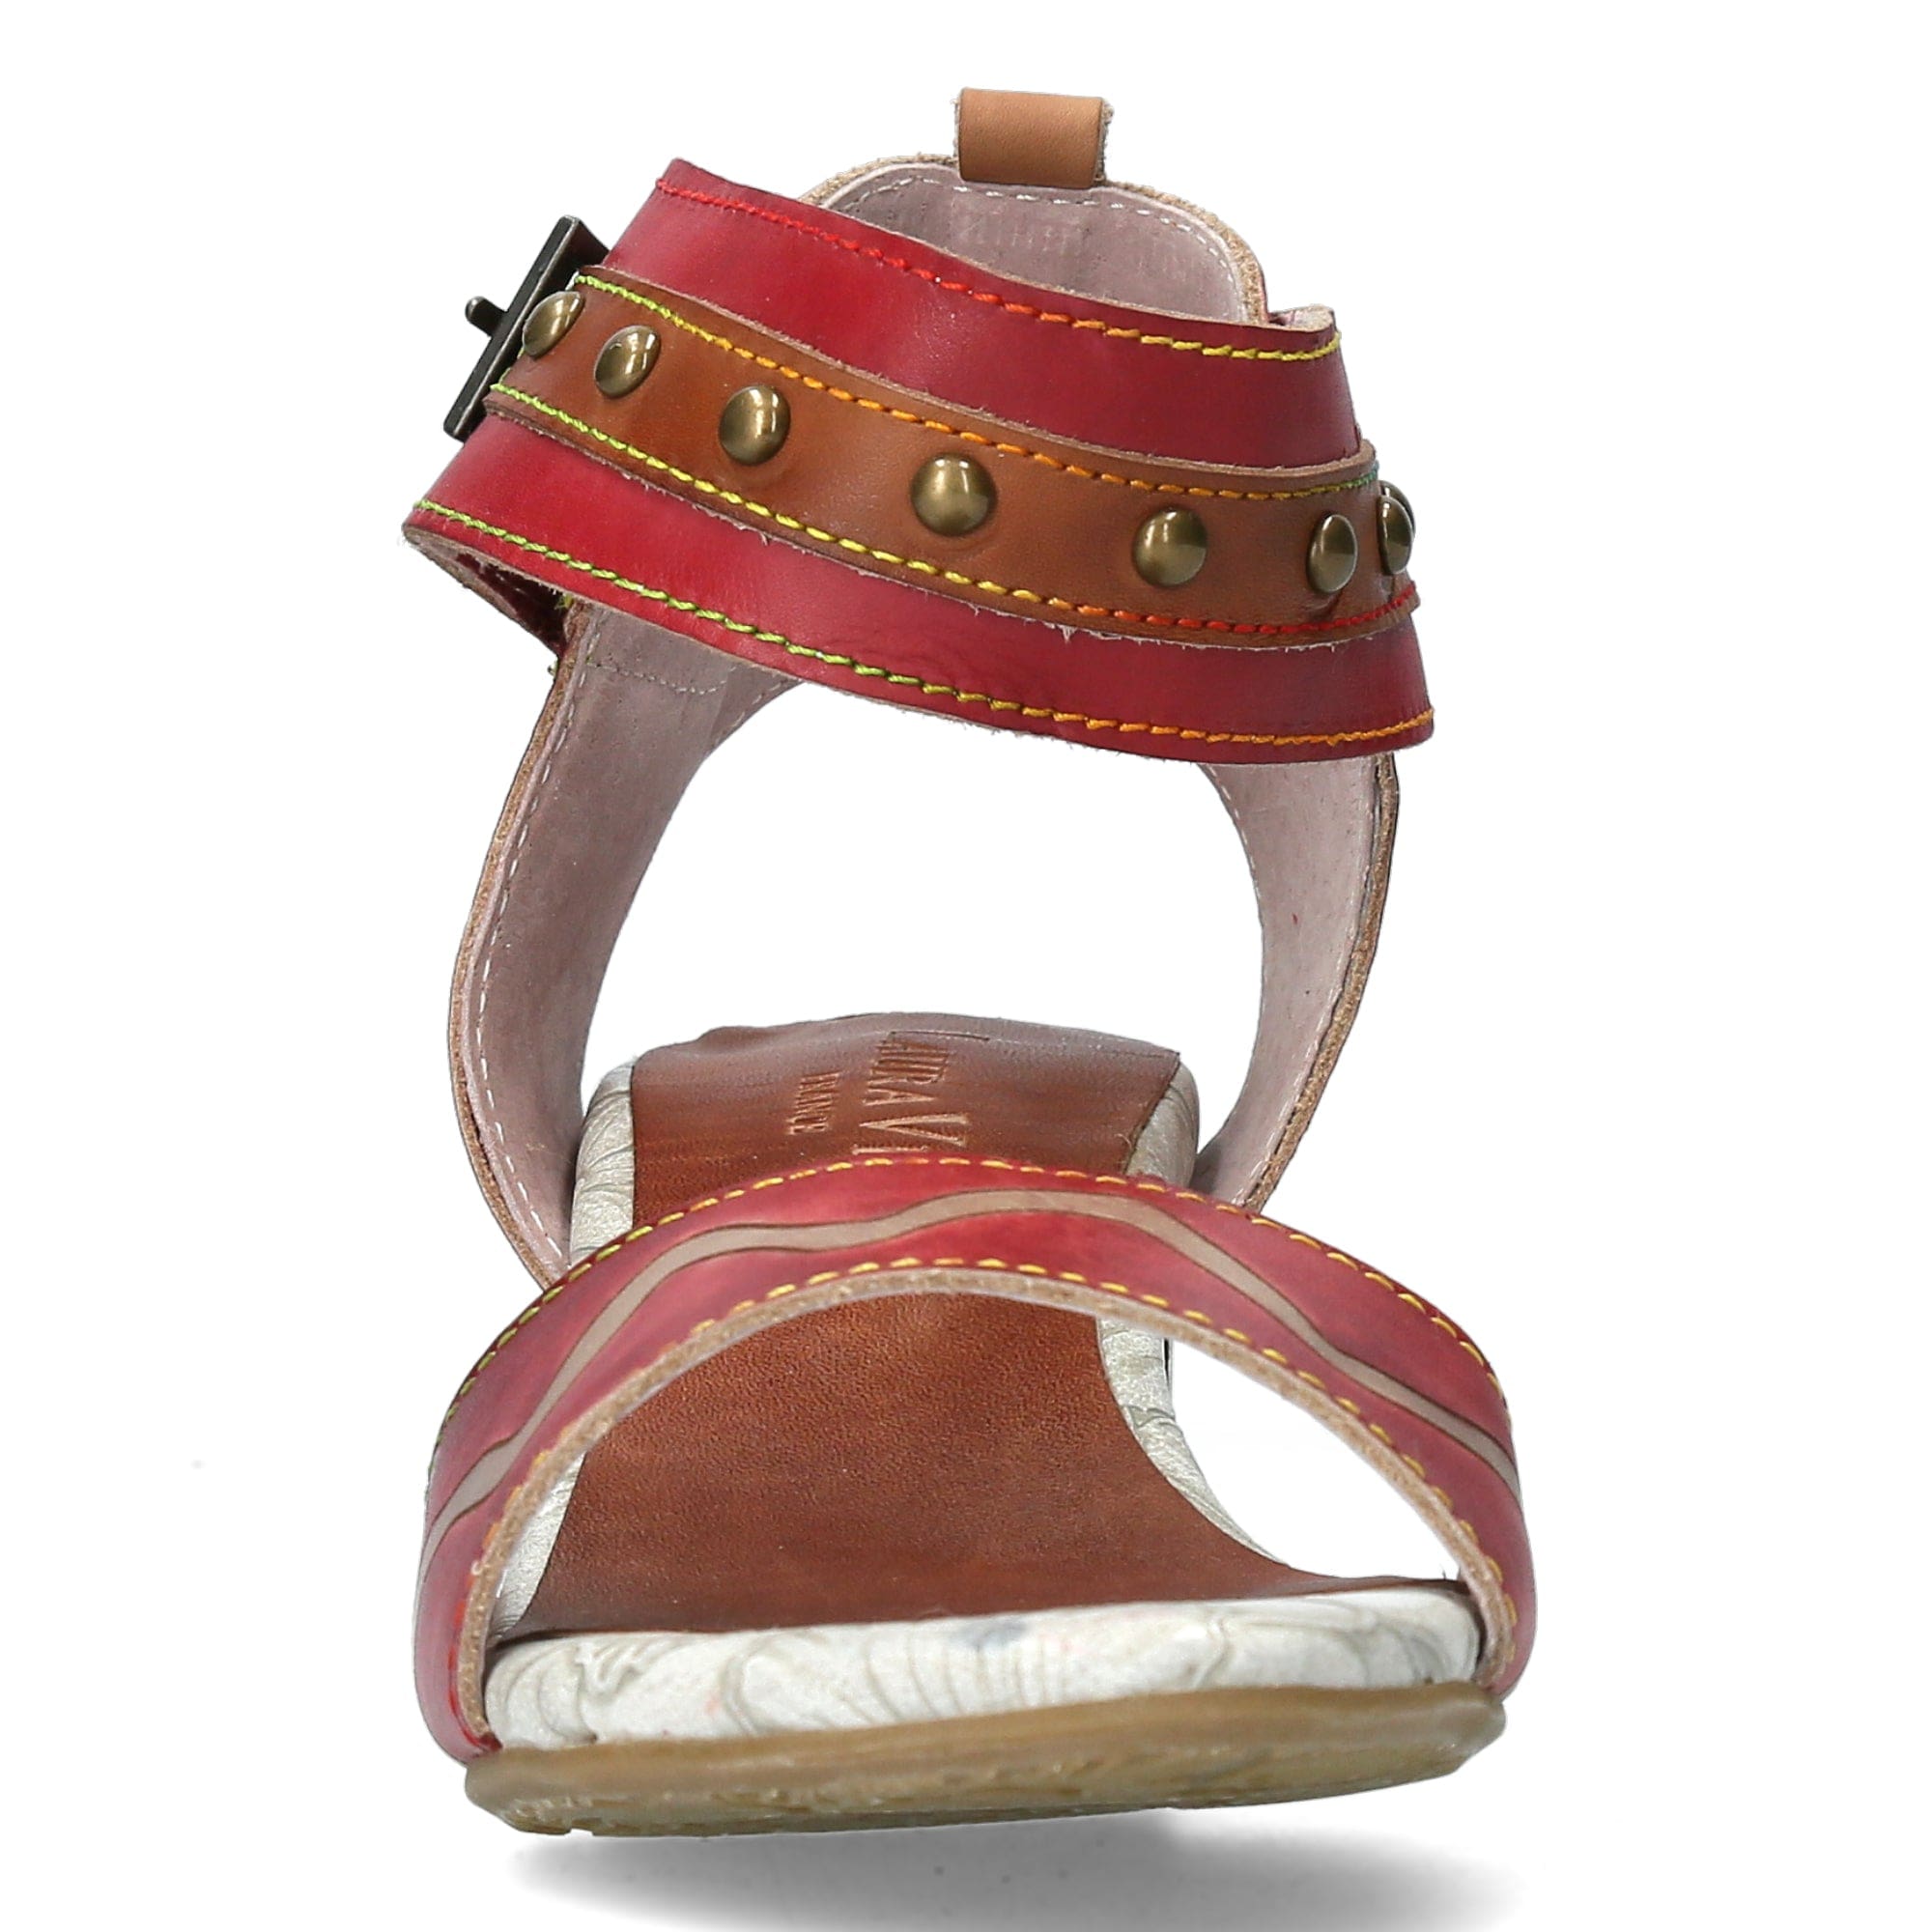 Schuh FACNAO01 - Sandale